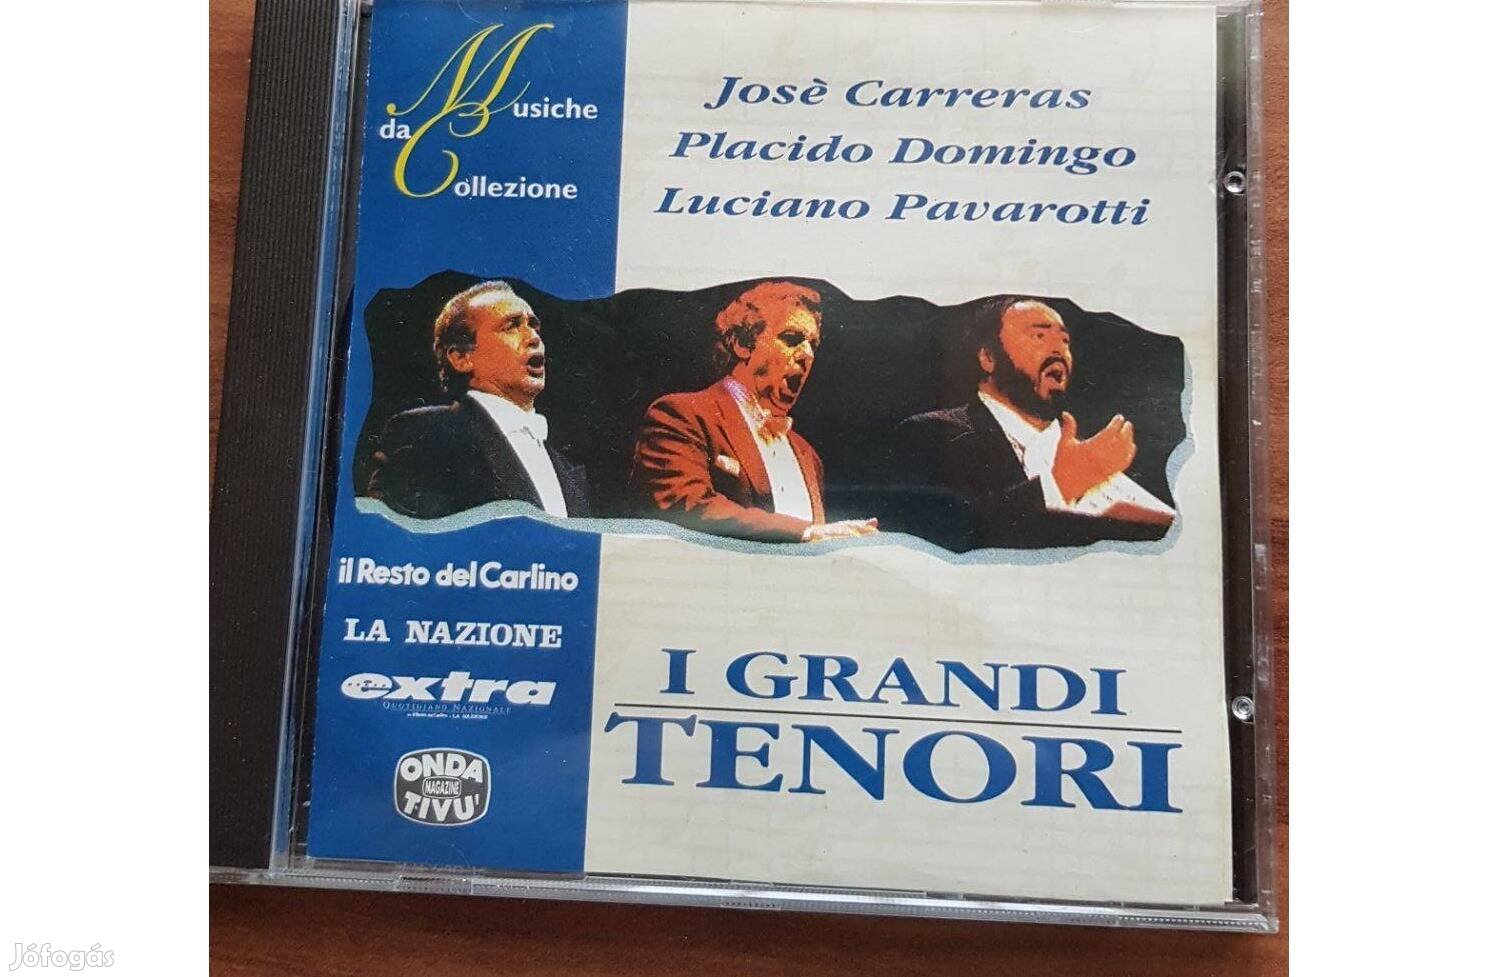 José Carreras, Placido Domingo, Luciano Pavarotti - I Grandi Tenori